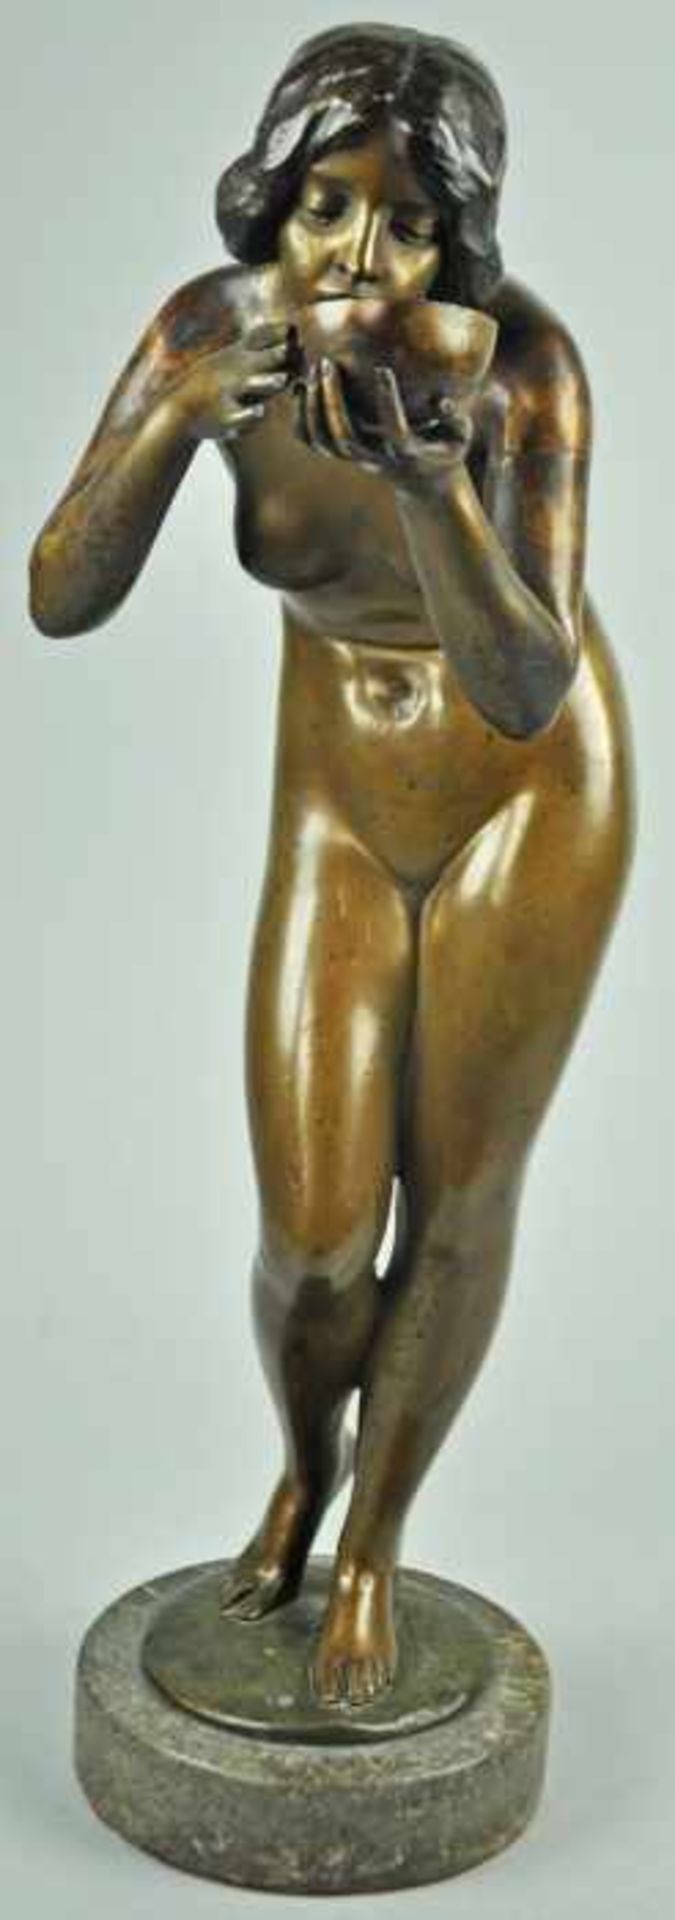 BRONZESKULPTUR "Die Trinkende", braun patinierte Bronzestatue auf rundem Marmorsockel, schwarze